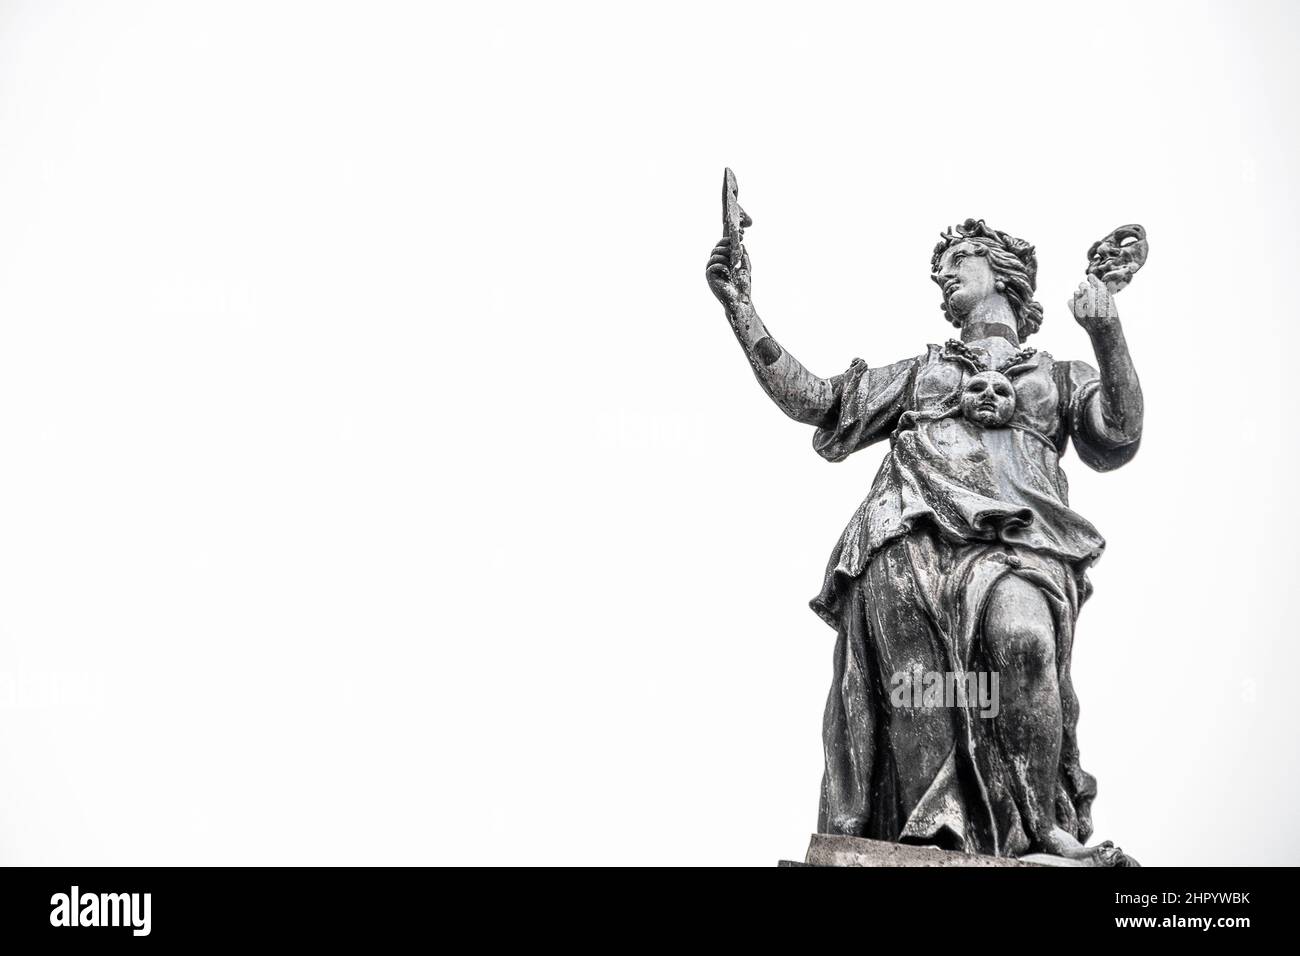 07-2019 Oxford UK - la musa della statua del piombo sul Clarendon Building a Oxford UK - la donna del drama che tiene le maschere del teatro - naturalmente isolata contro il cielo bianco Foto Stock